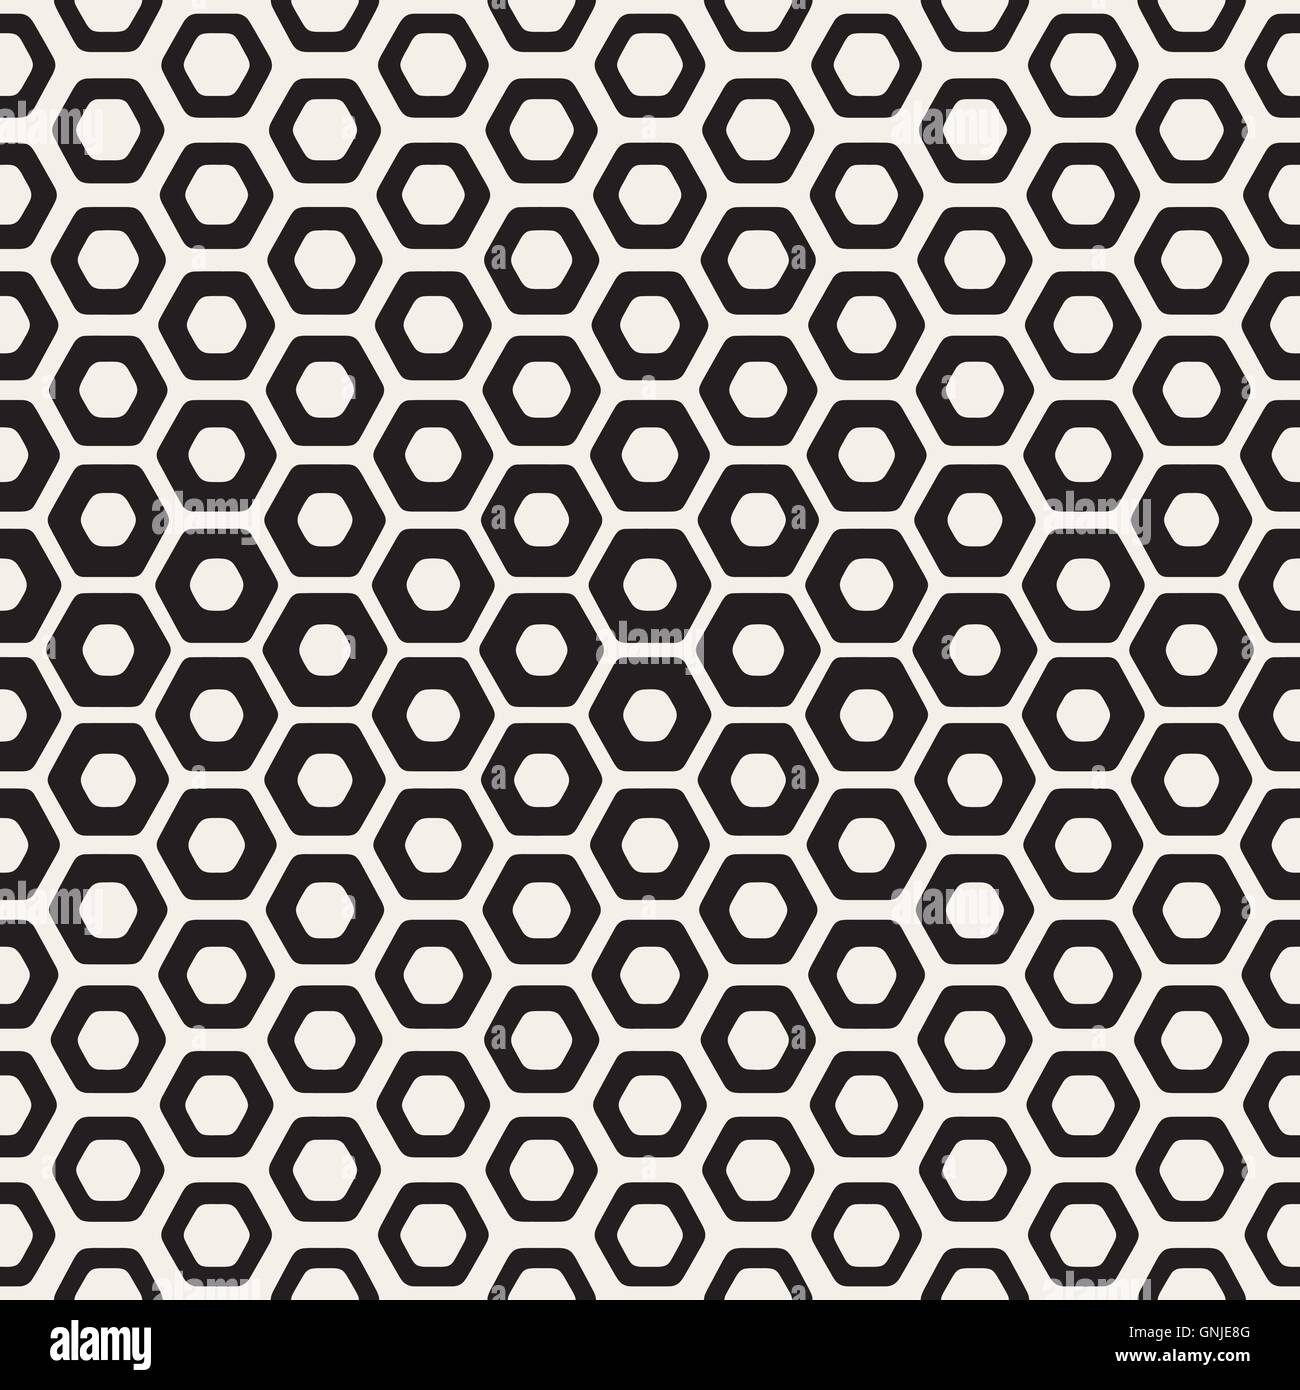 Vektor-nahtlose weiße und schwarze Hexagon Halbton Wabenmuster Stock Vektor